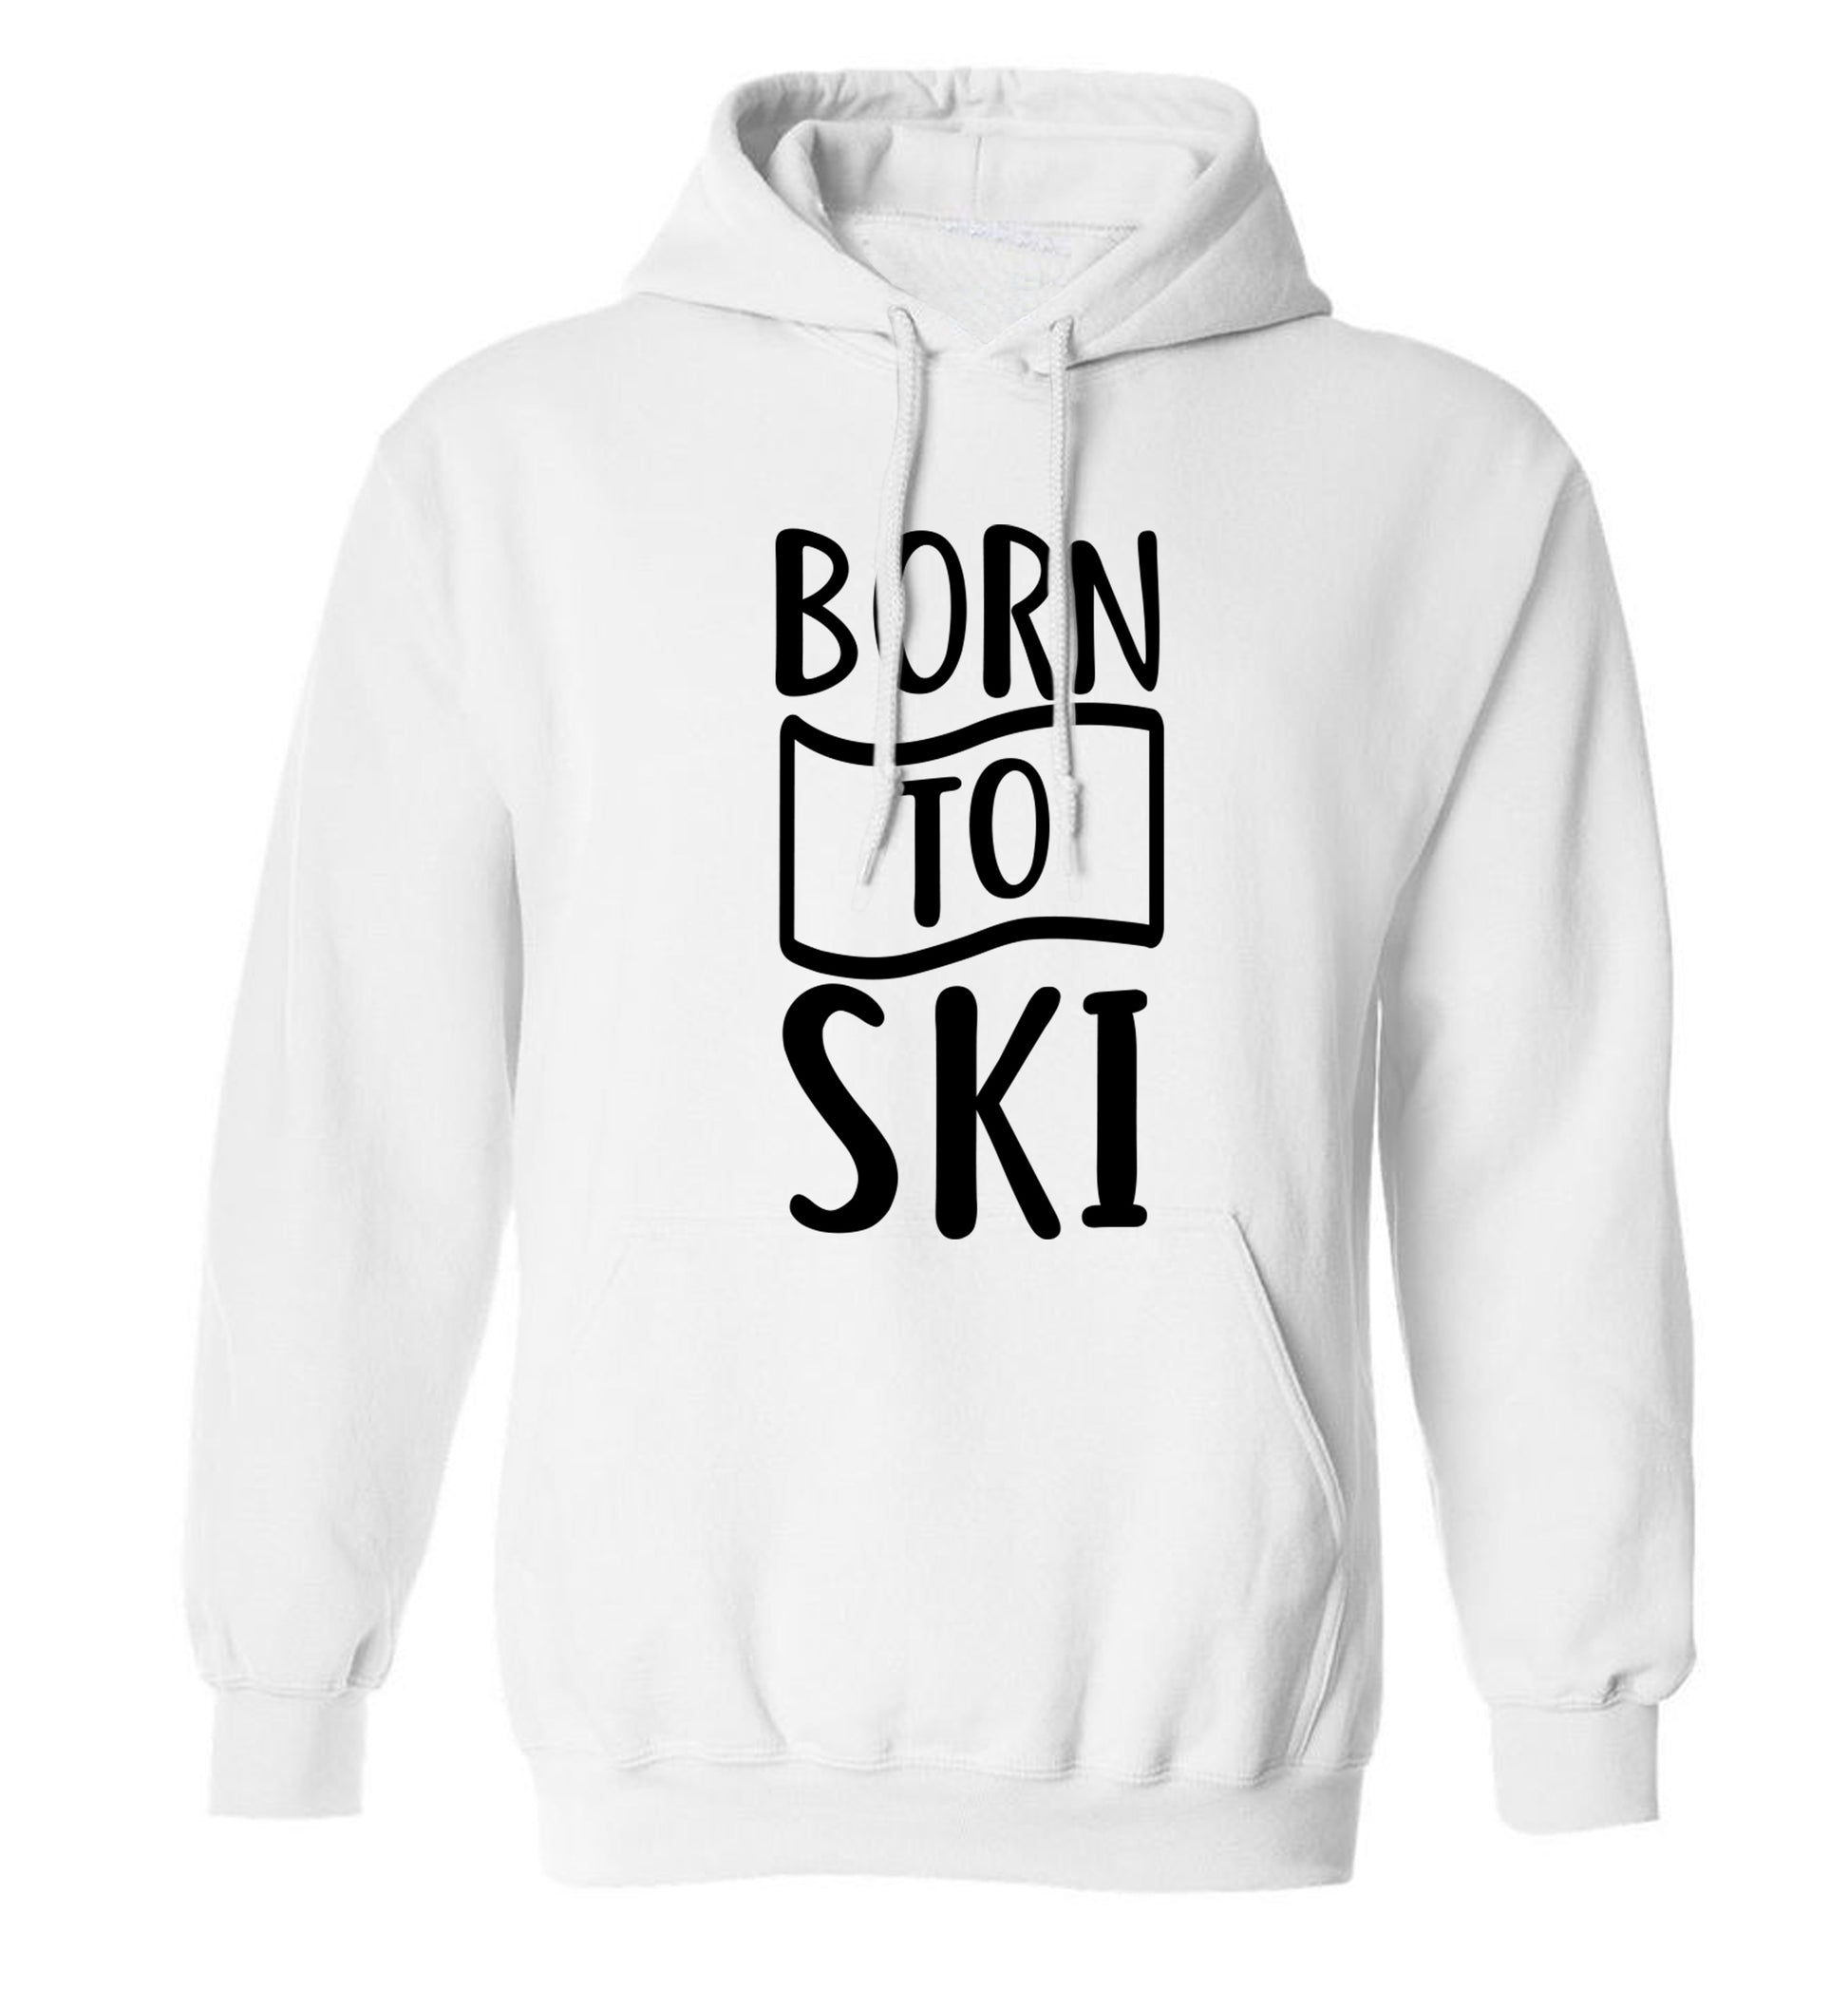 Born to ski adults unisexwhite hoodie 2XL